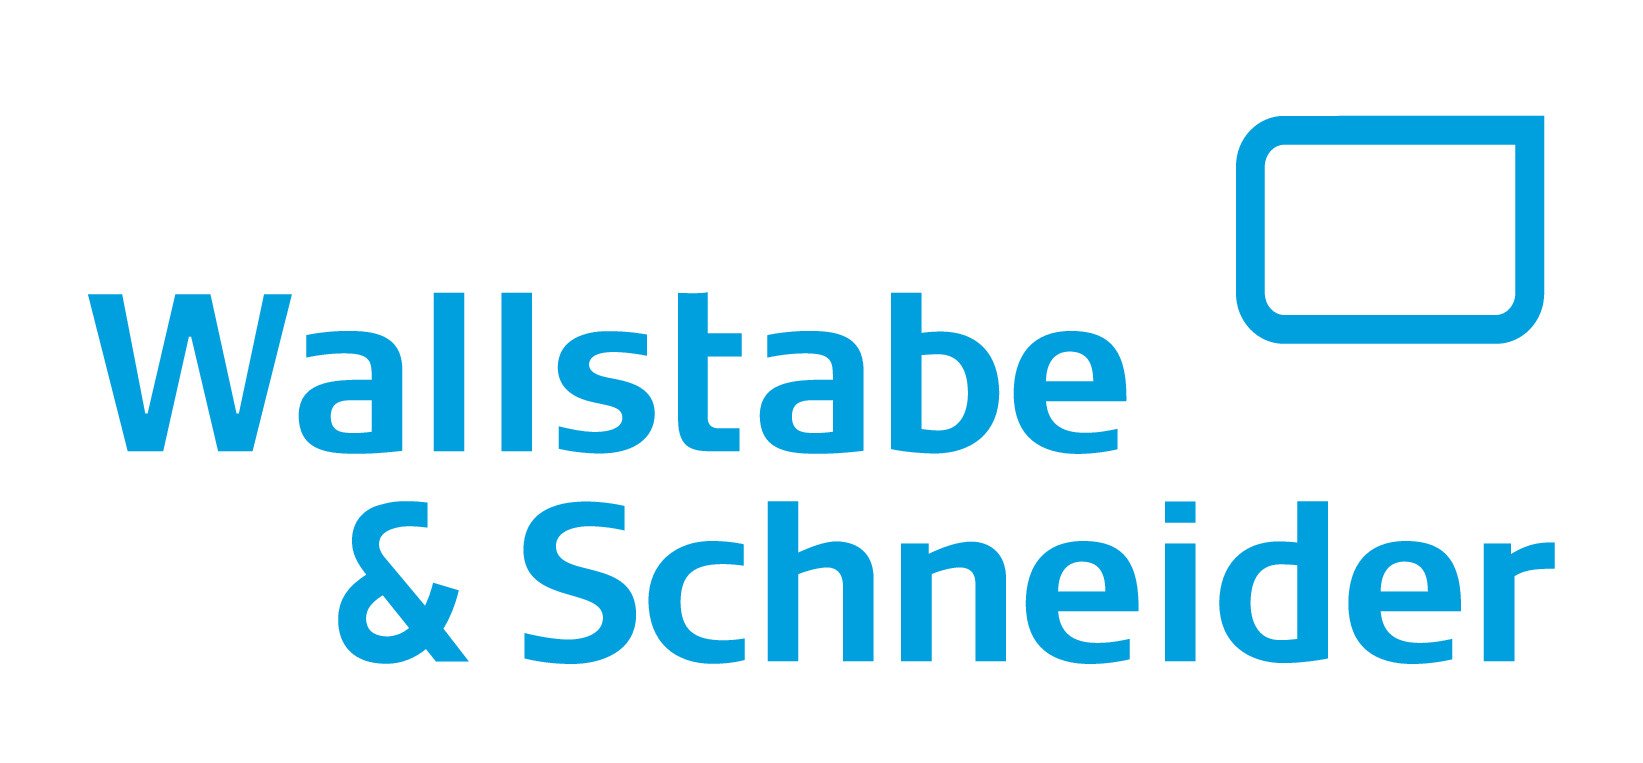 Dichtungstechnik Wallstabe & Schneider GmbH & Co. KG - Logo